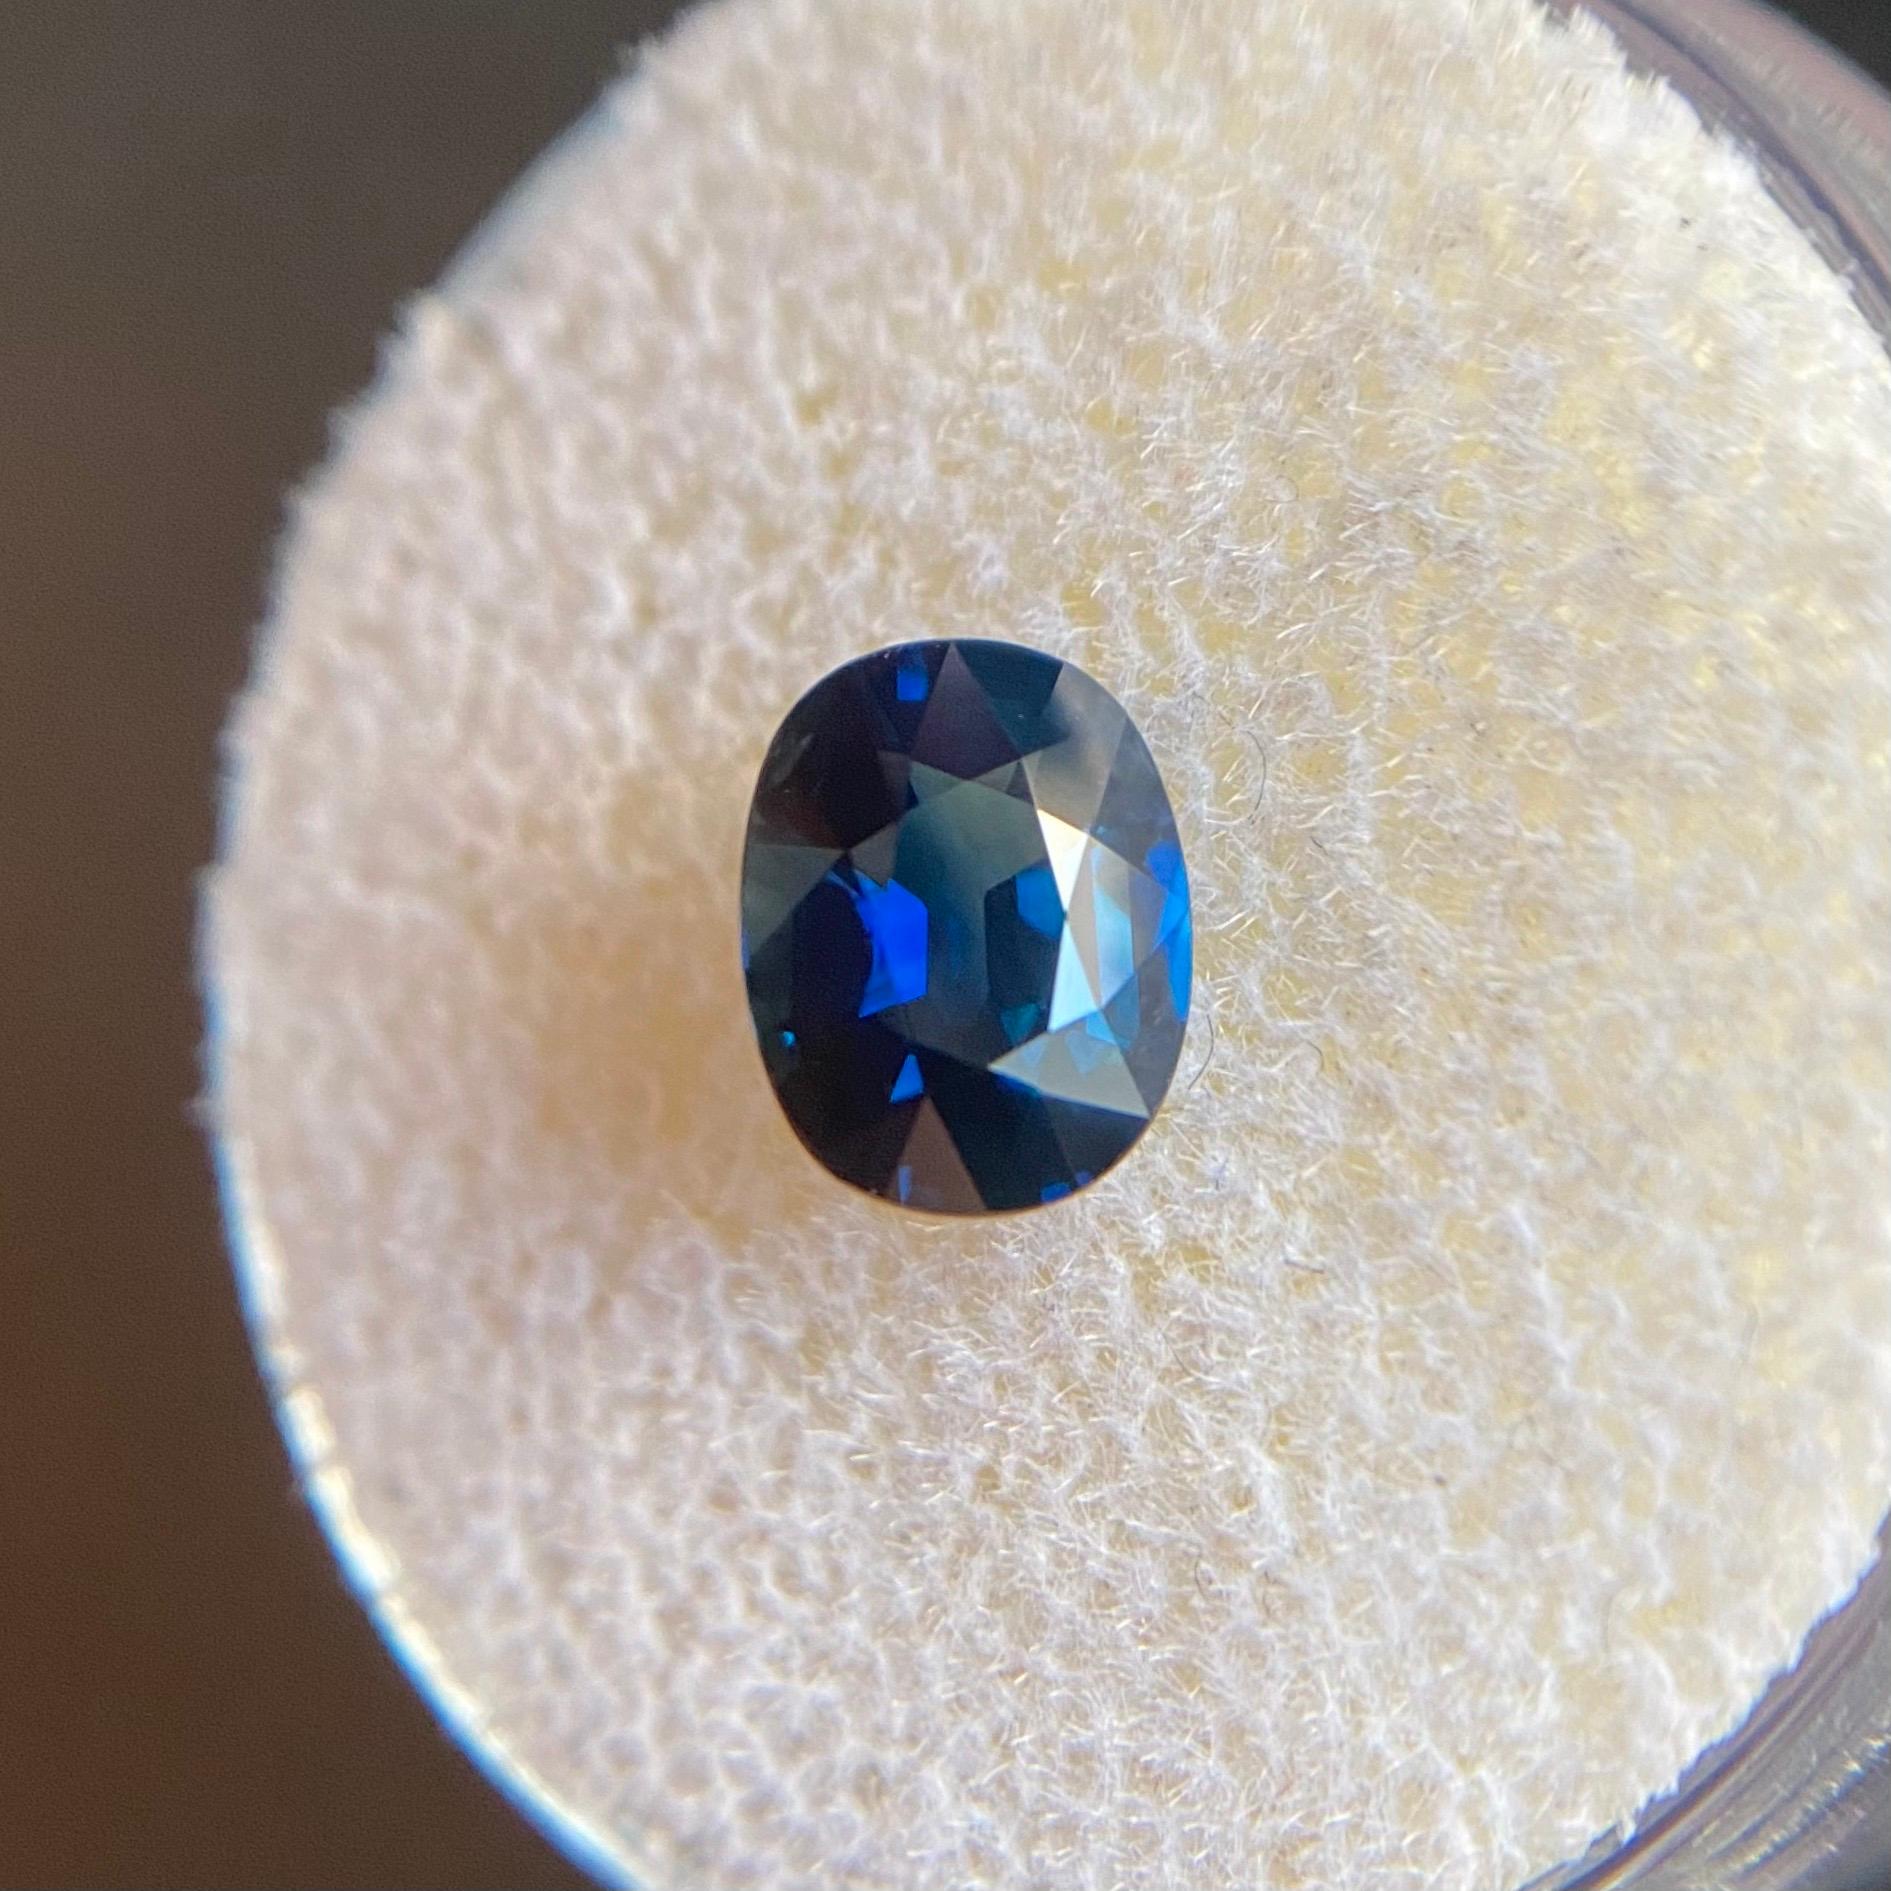 deep blue sapphire